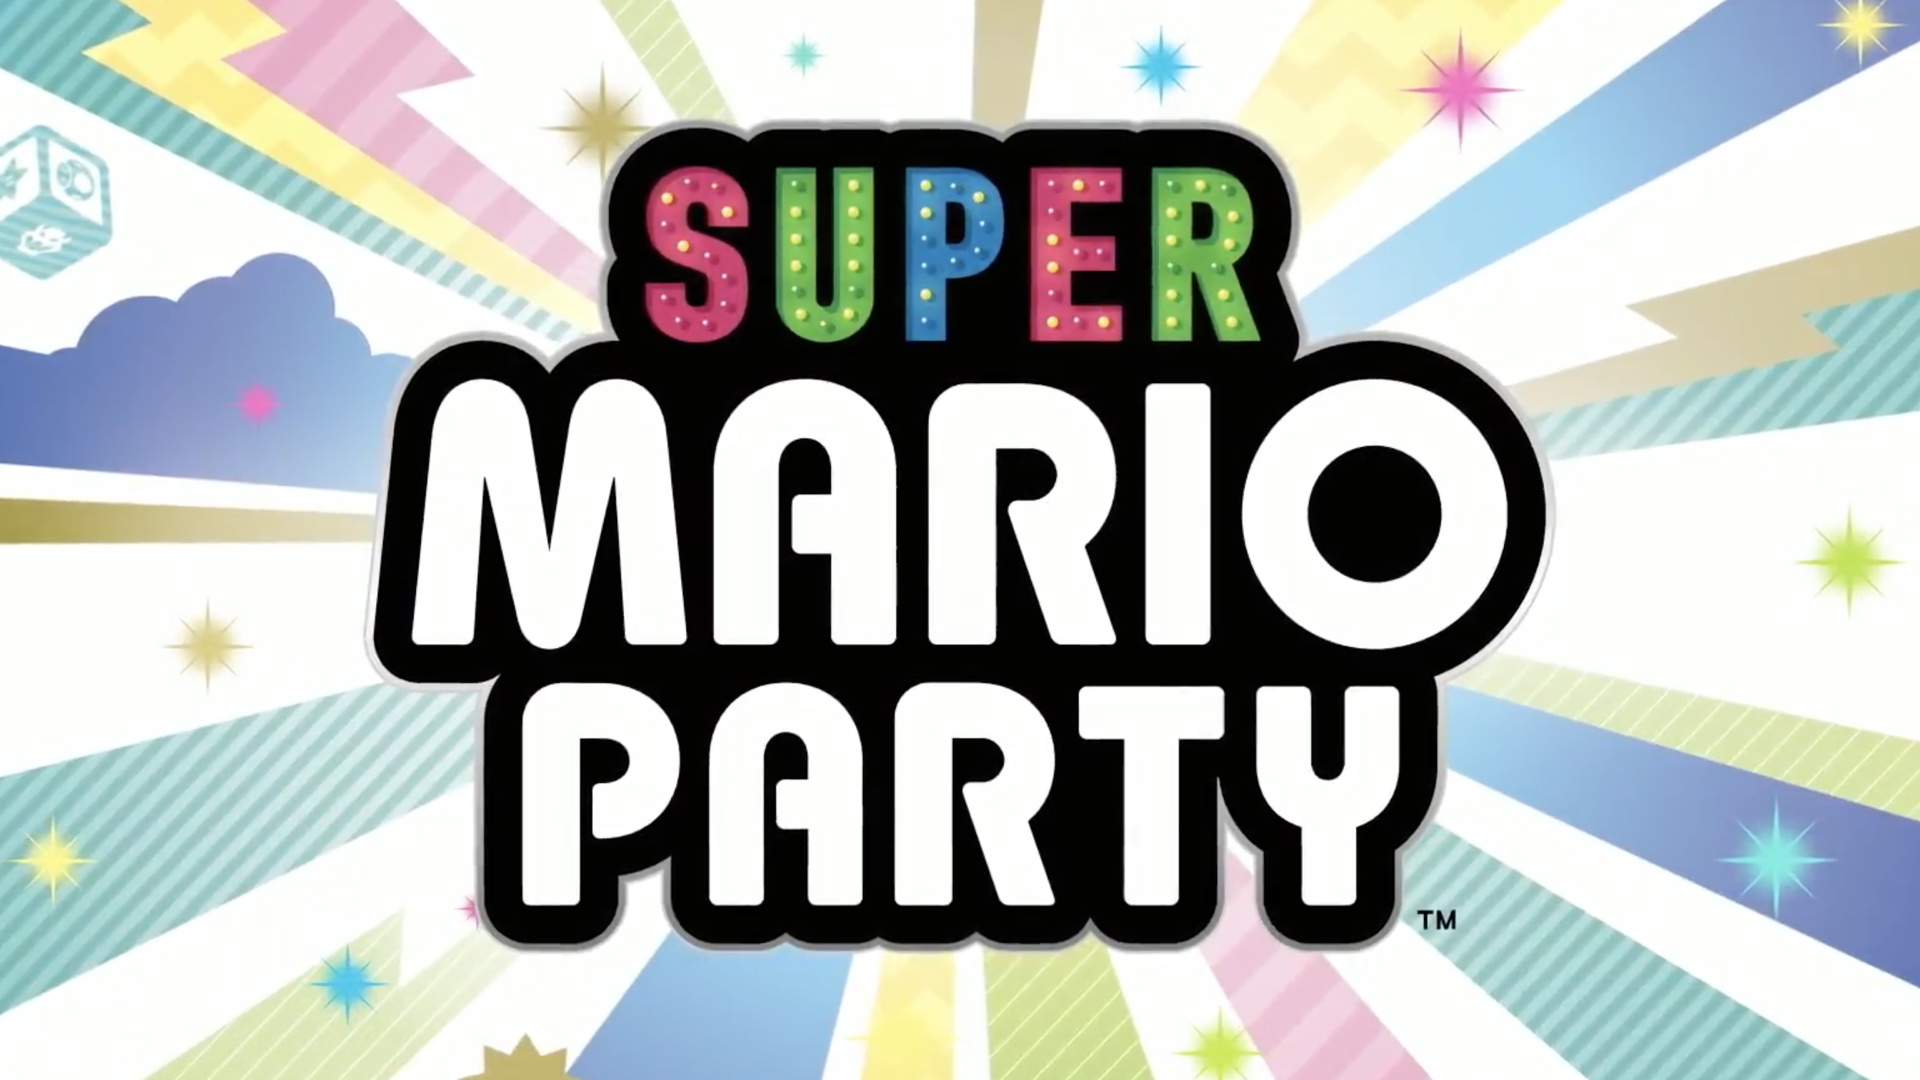 Super Mario Super Mario Party 1920x1080